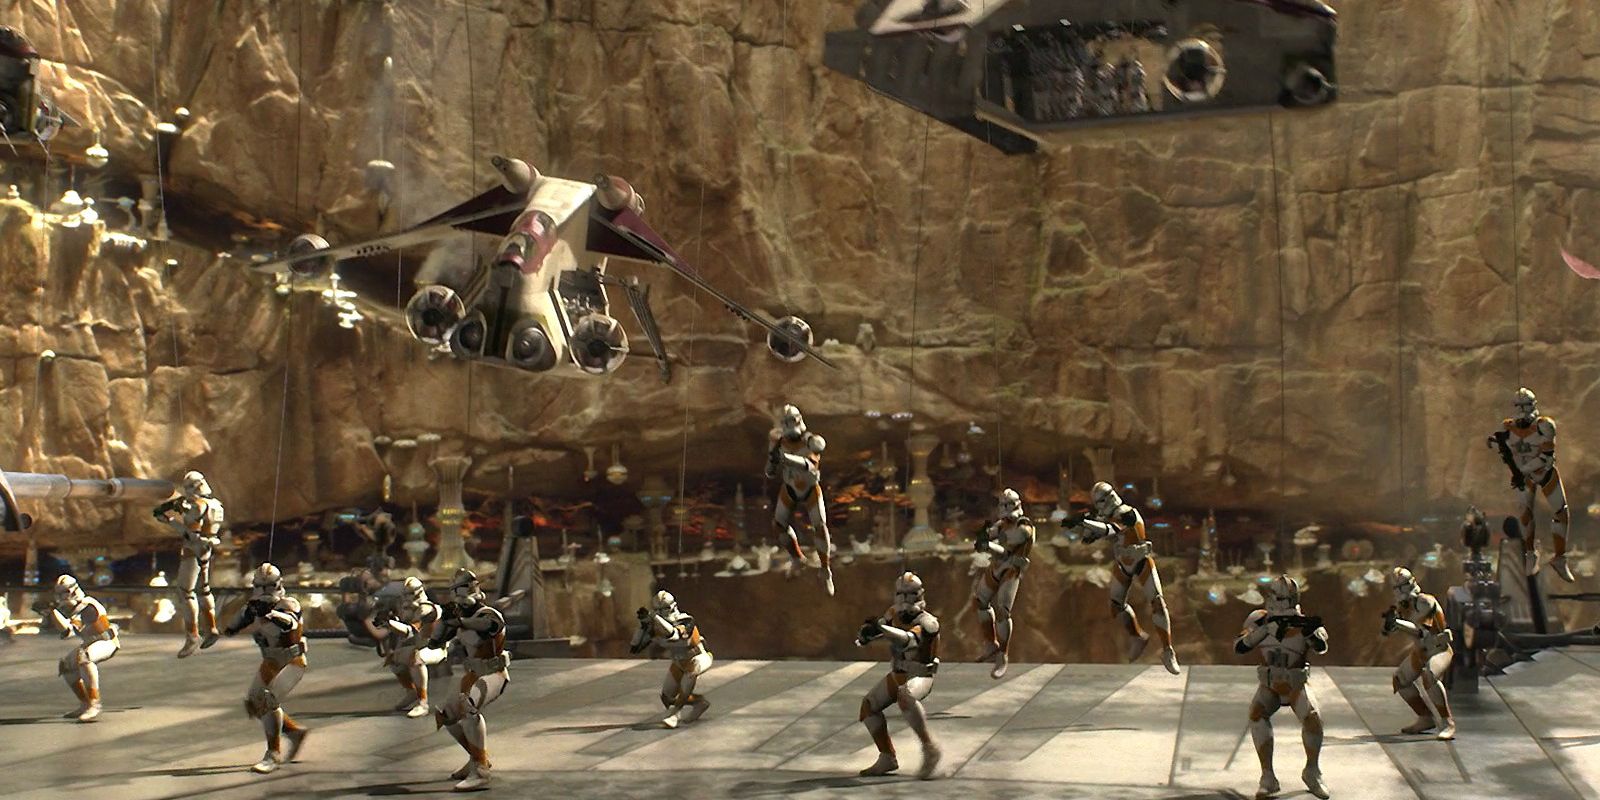 Stormtroopers atirando com suas armas durante a Batalha de Utapau em Star Wars Revenge of the Sith